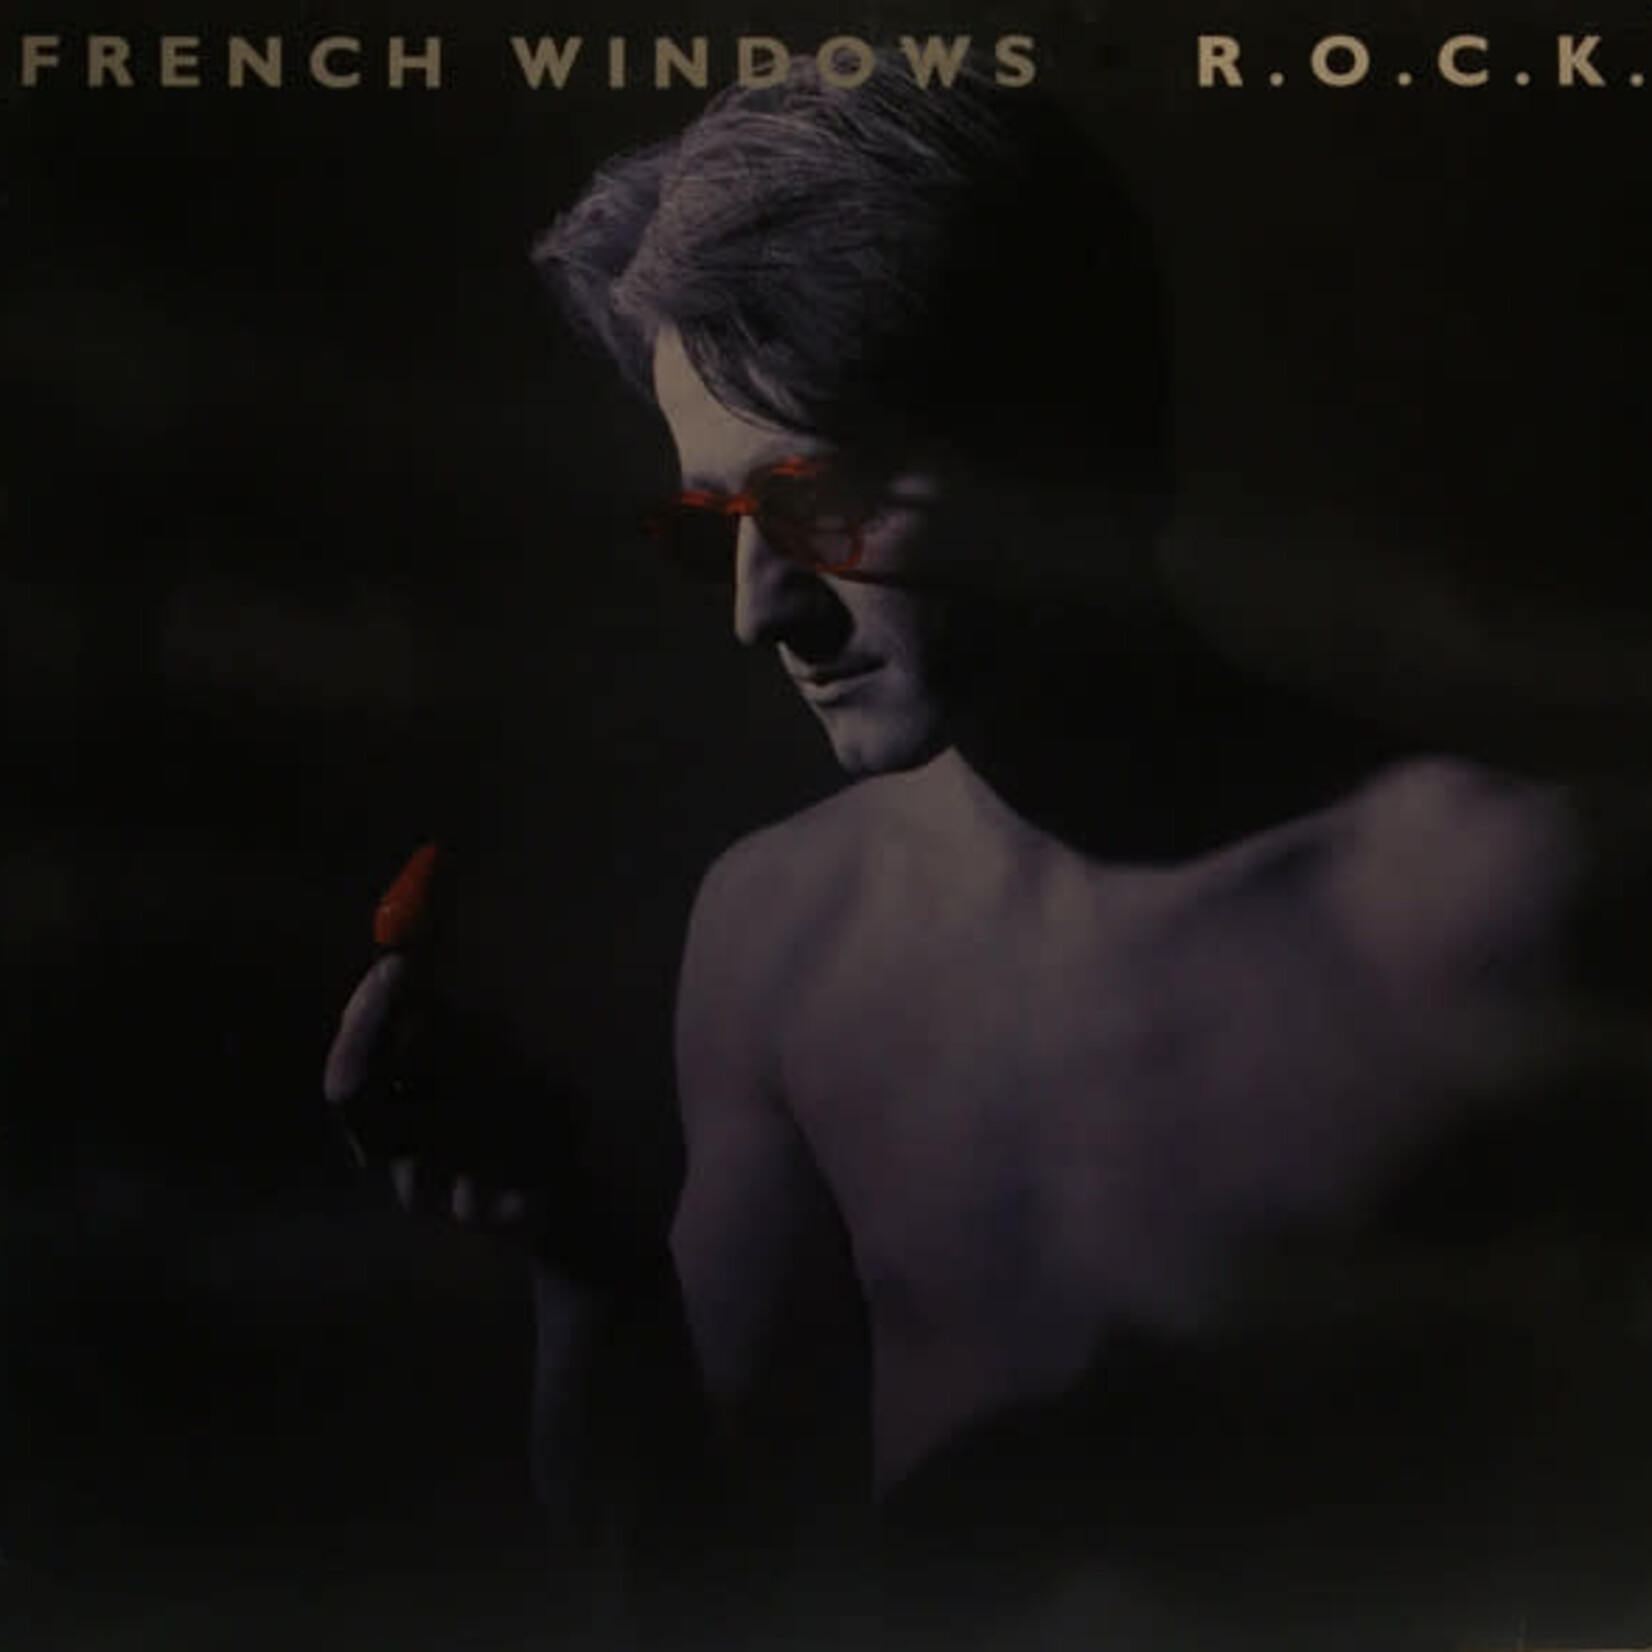 French Windows – R.O.C.K.